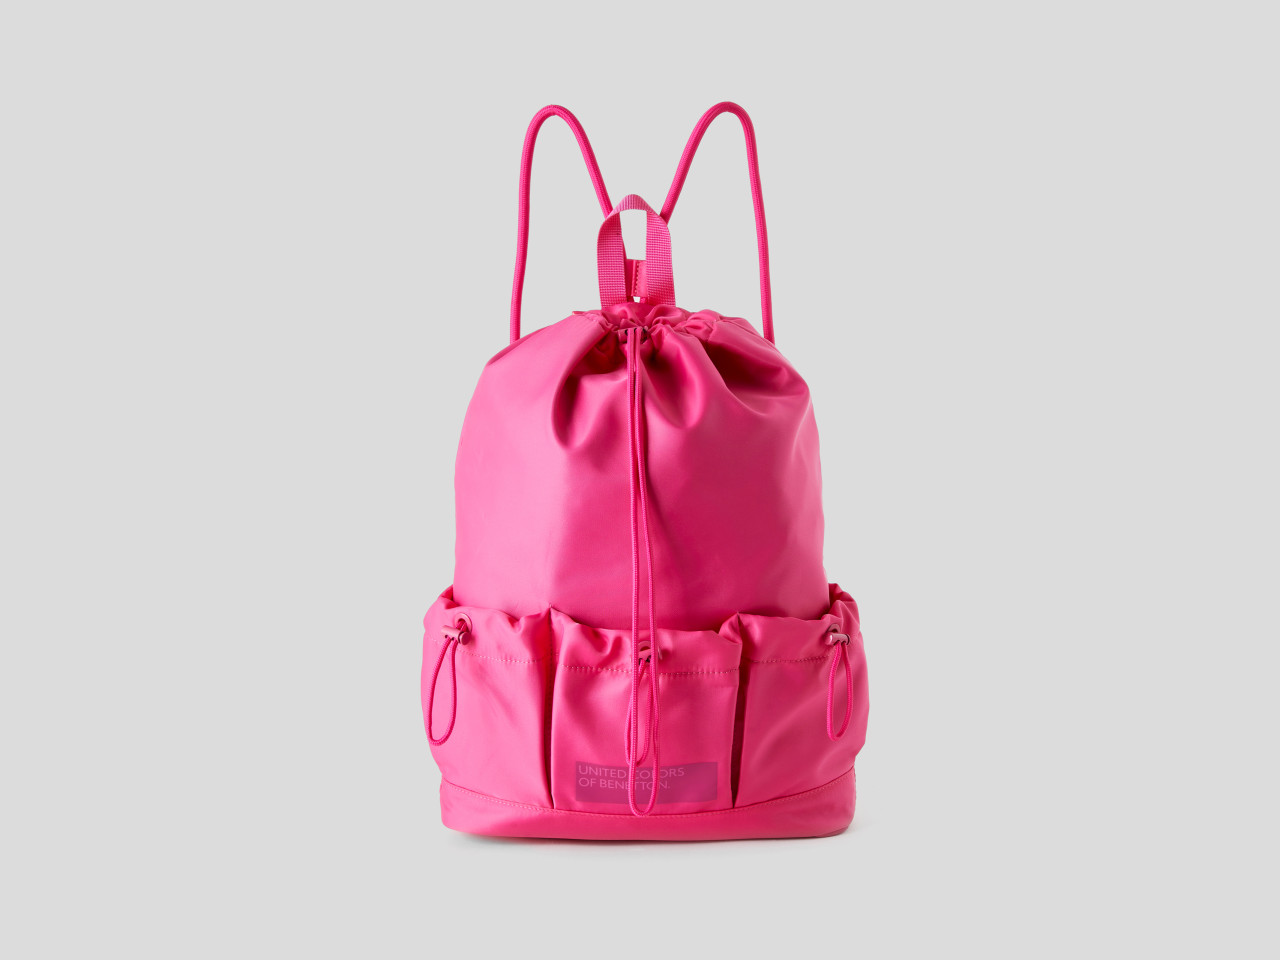 BENETTON BUTTERFLIES Backpack Rucksack Pink Girls Travel Bag 39cm OFFICIAL 